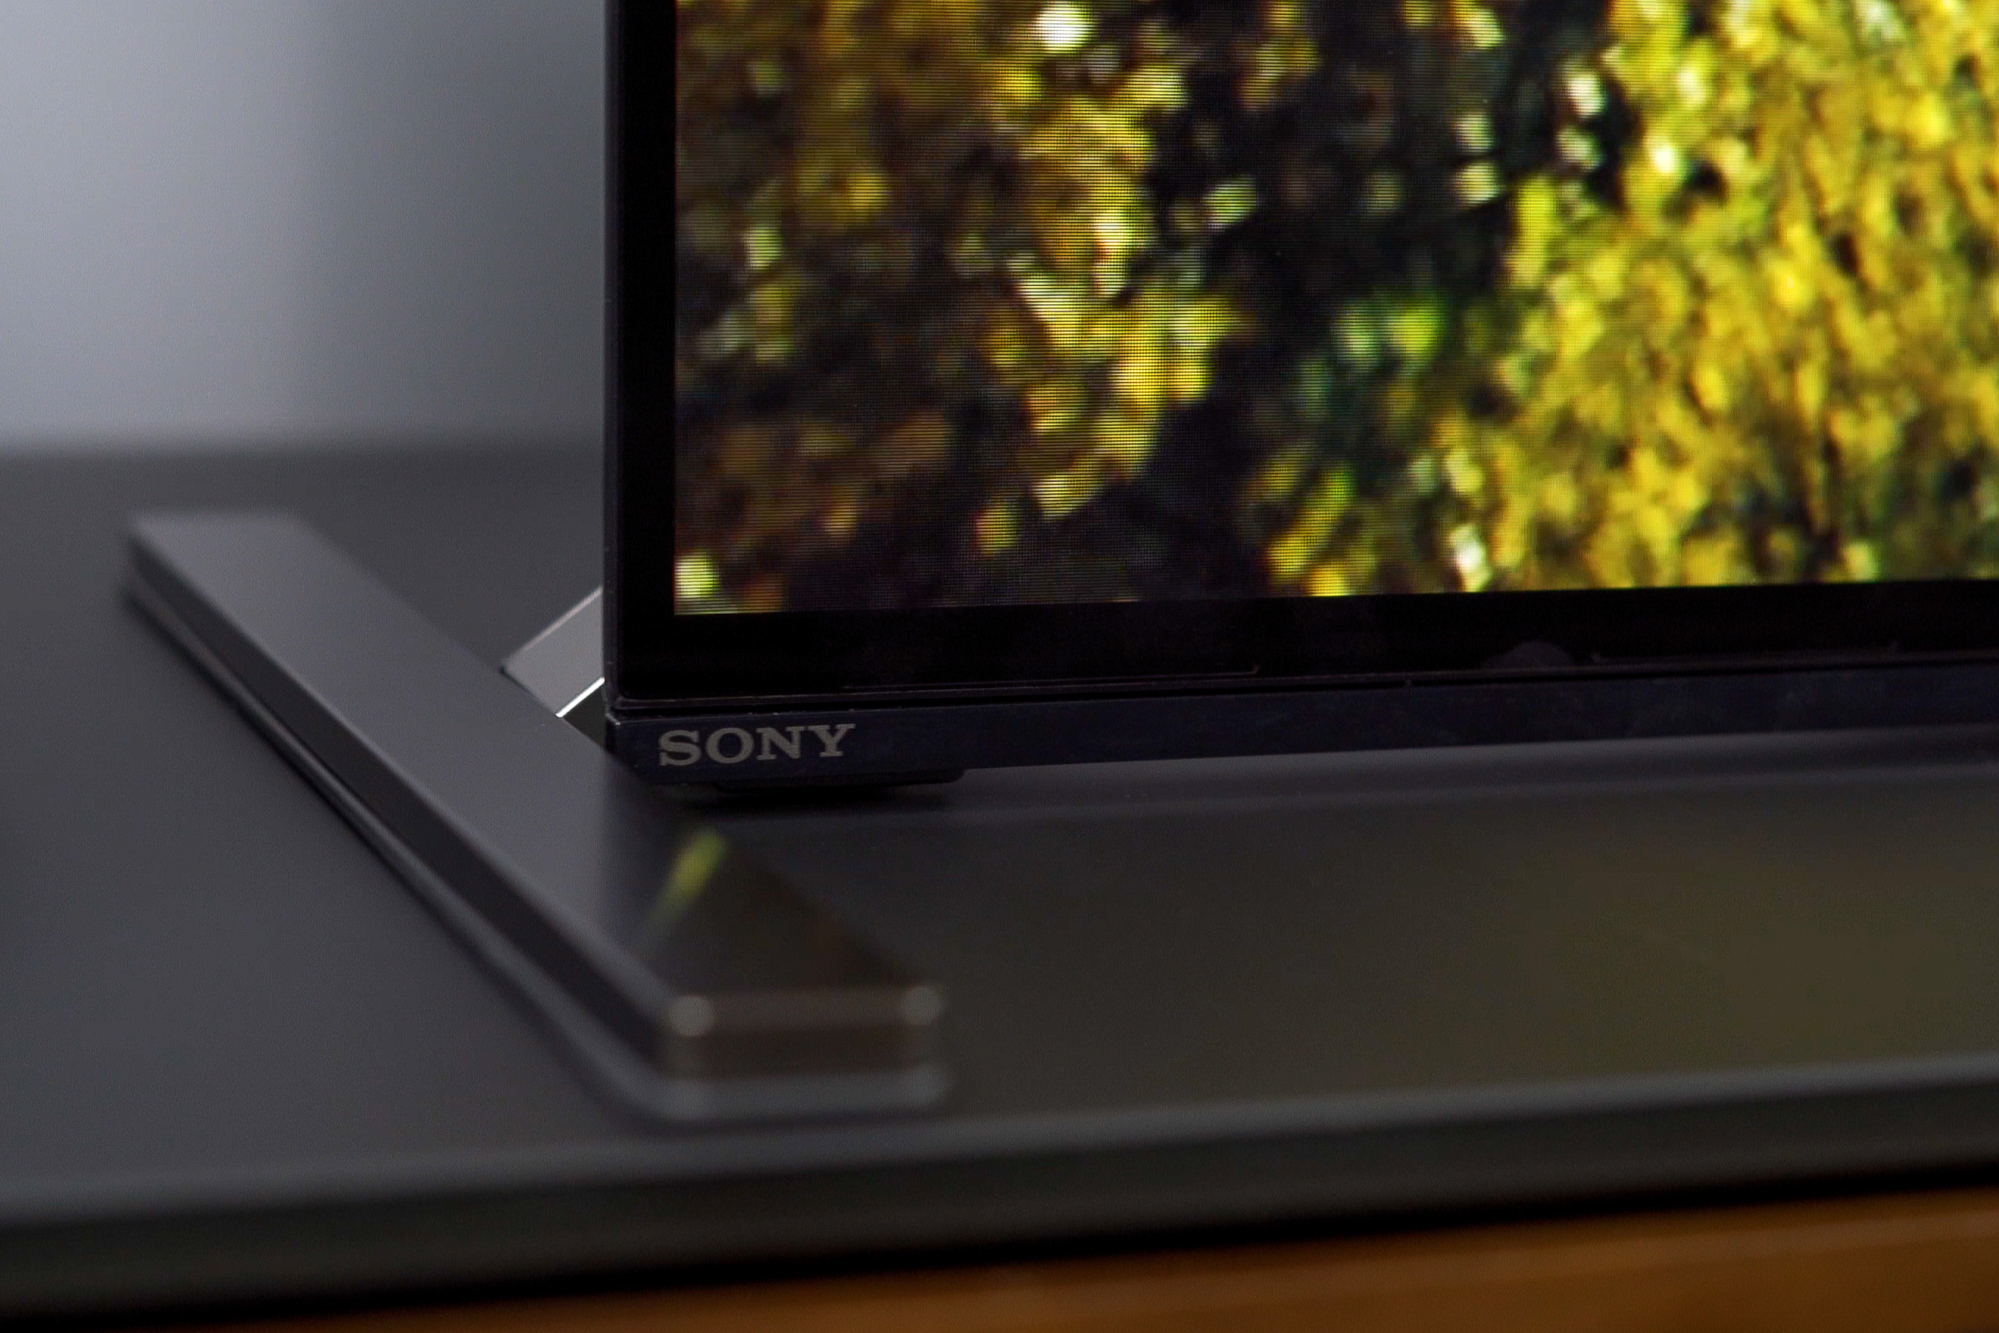 テレビ/映像機器 テレビ Sony Bravia XR A90J 4K HDR OLED TV Review | Digital Trends